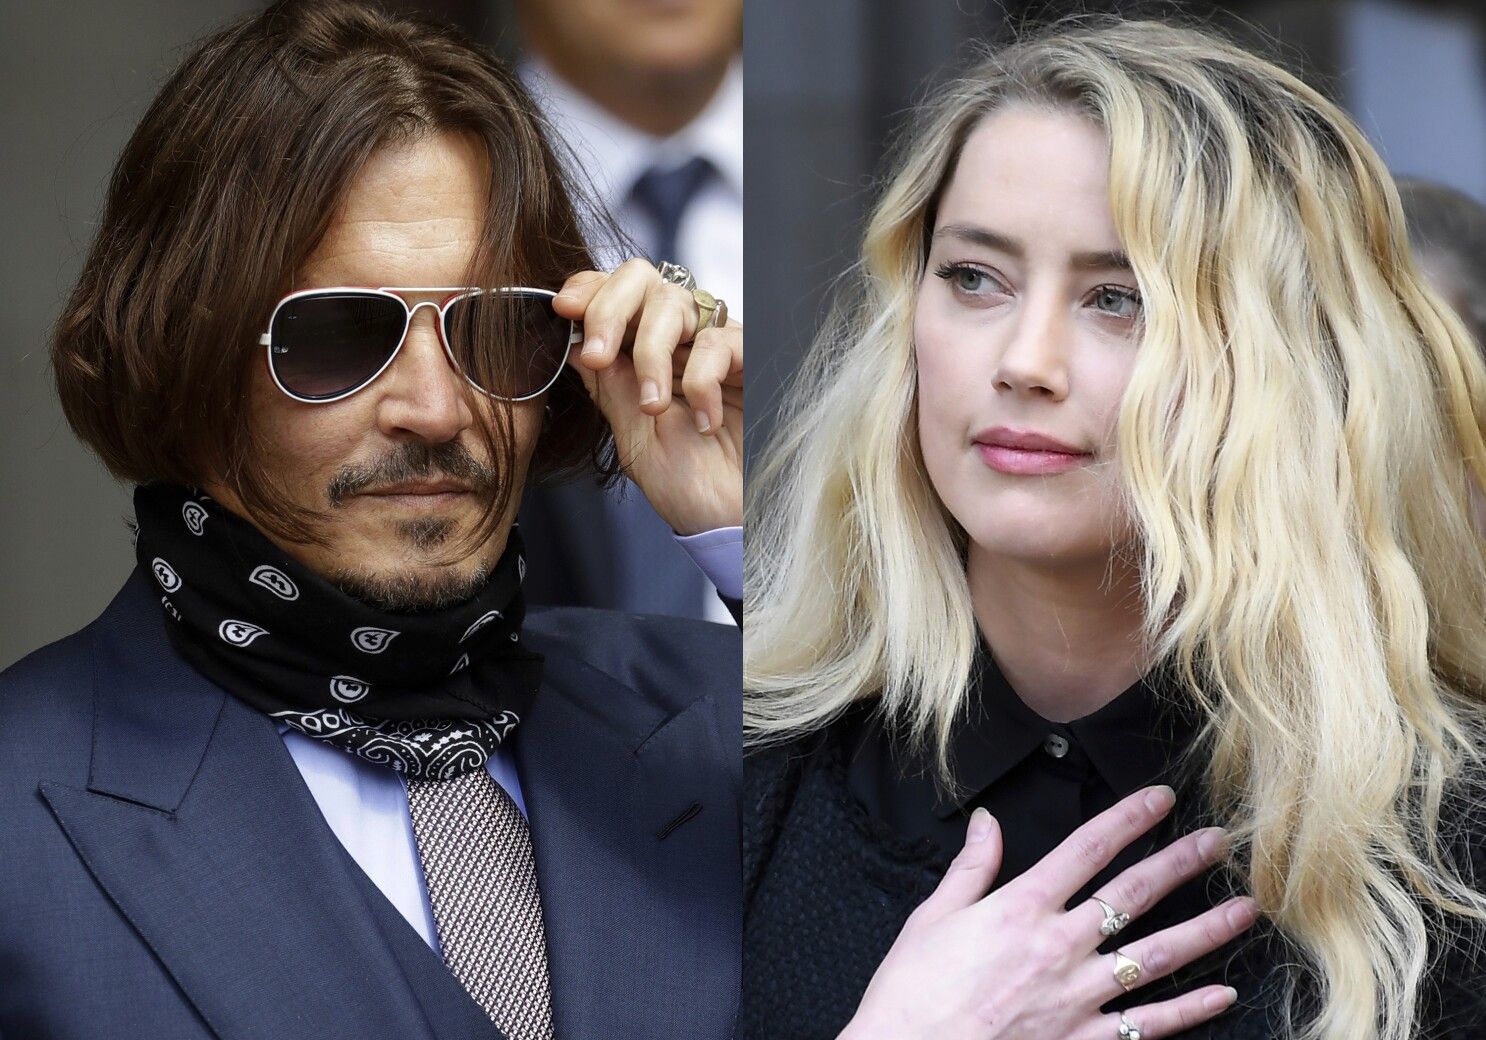 Amber Heard pagará 15 millones de dólares a Depp por acusaciones falsas: jurado